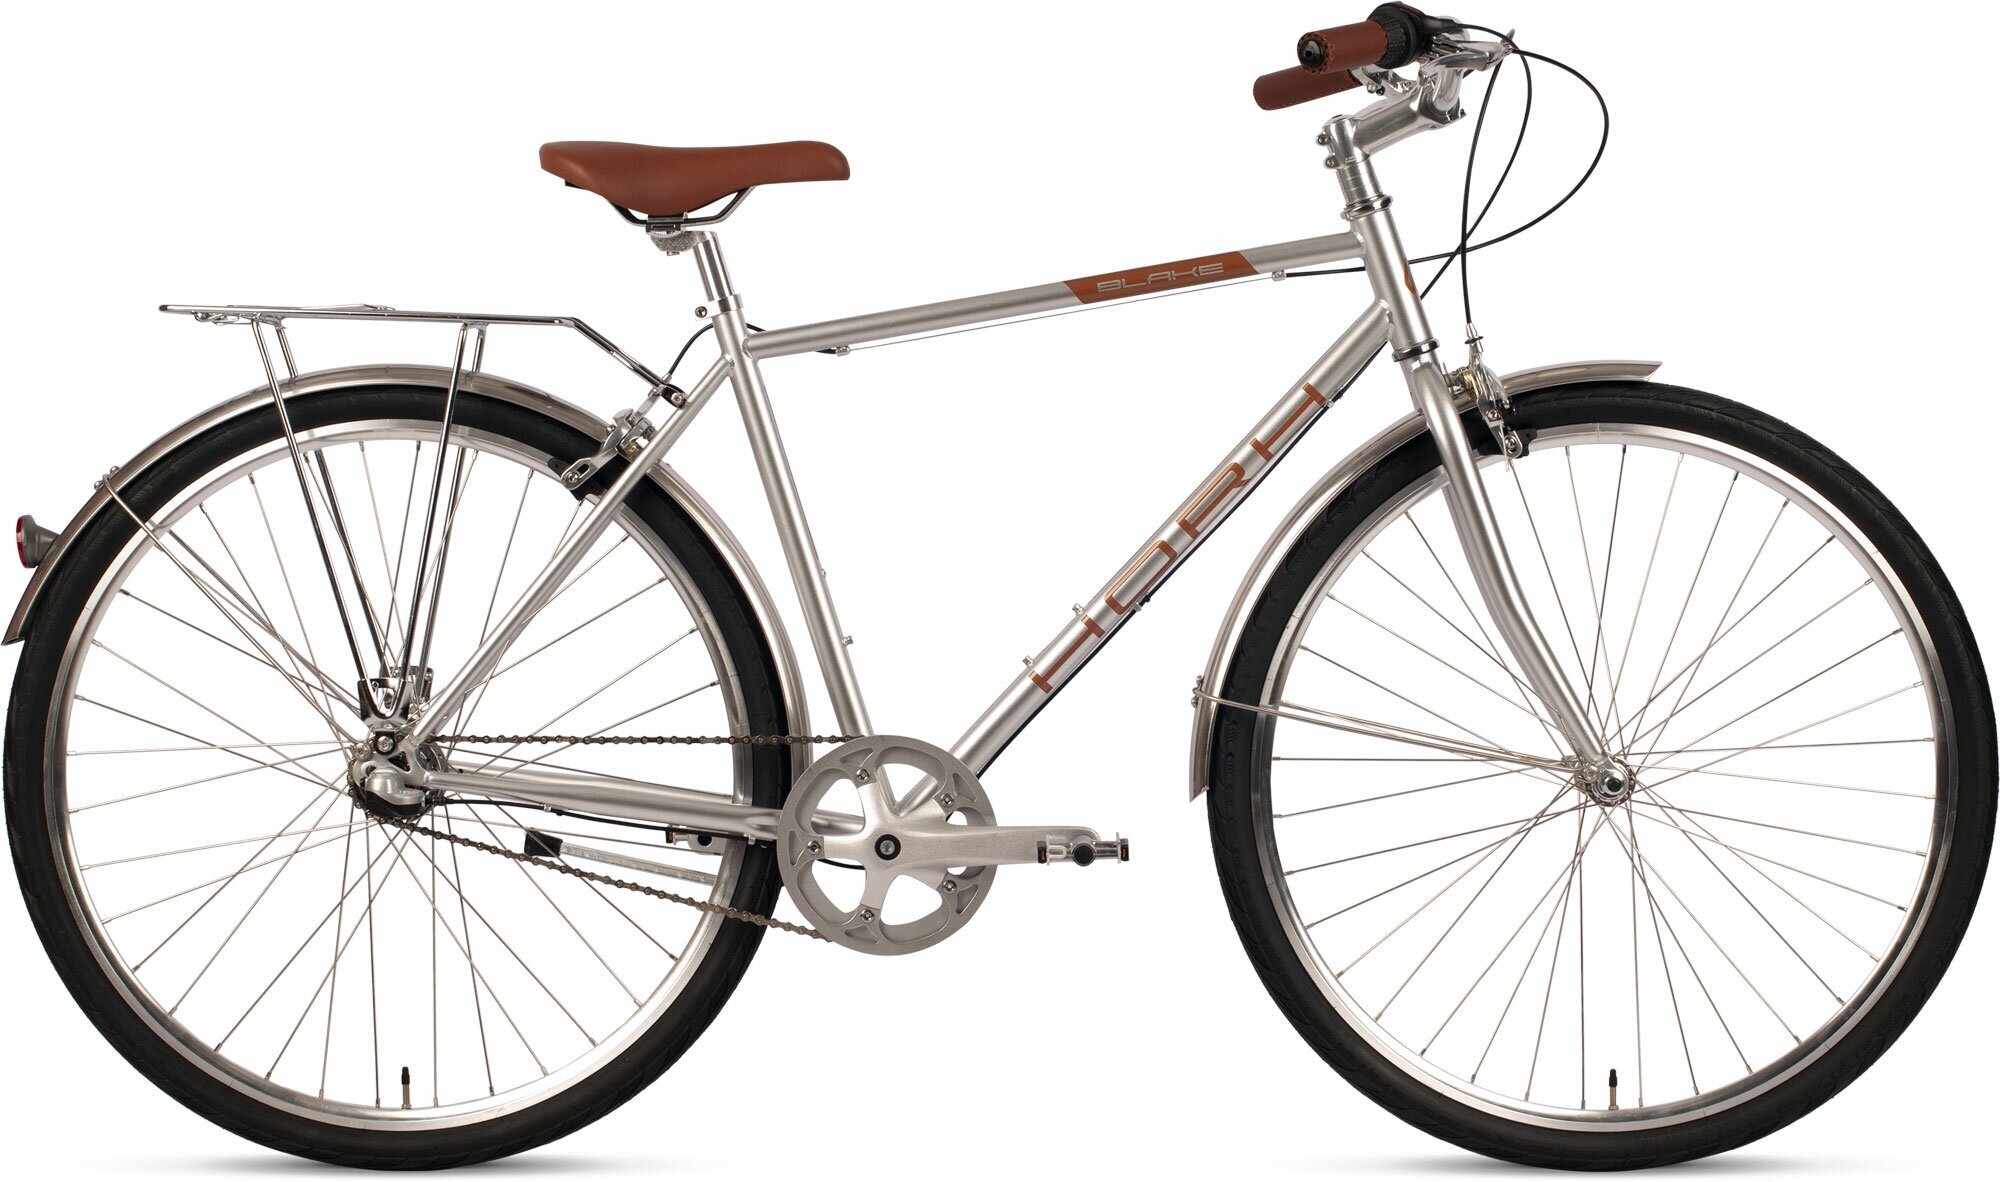 Велосипед городской HORH BLAKE (2023), ригид, взрослый, мужской, стальная рама, оборудование Shimano Nexus, 3 скорости, ободные тормоза, цвет Silver, серебристый цвет, размер рамы S, для роста 160-170 см